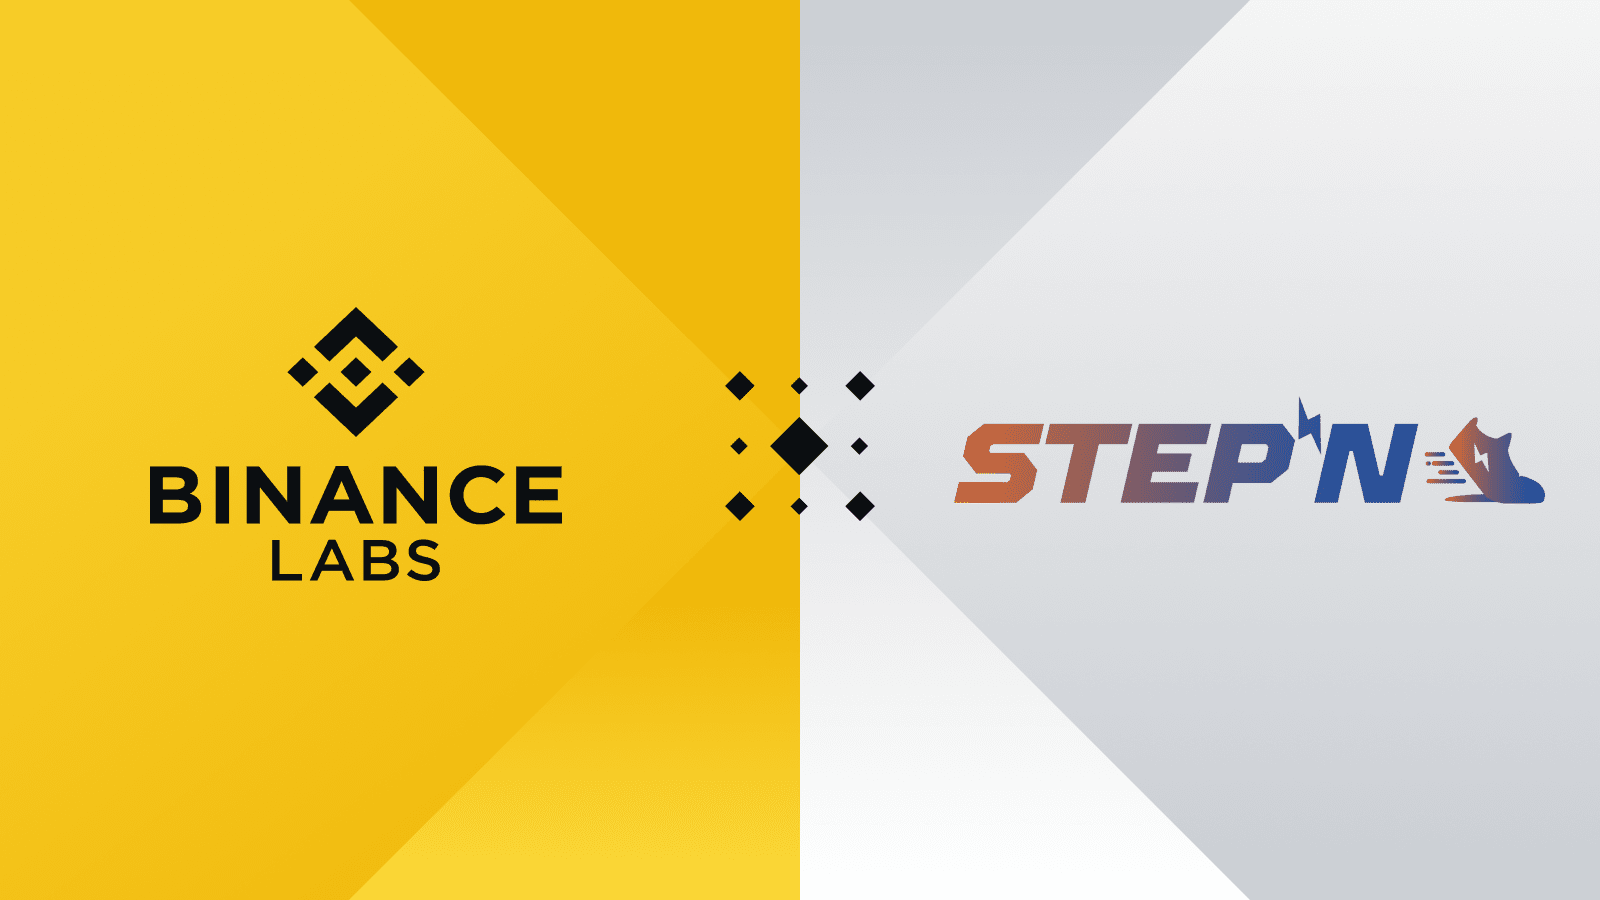 Binance Labs thông báo đầu tư chiến lược vào STEPN